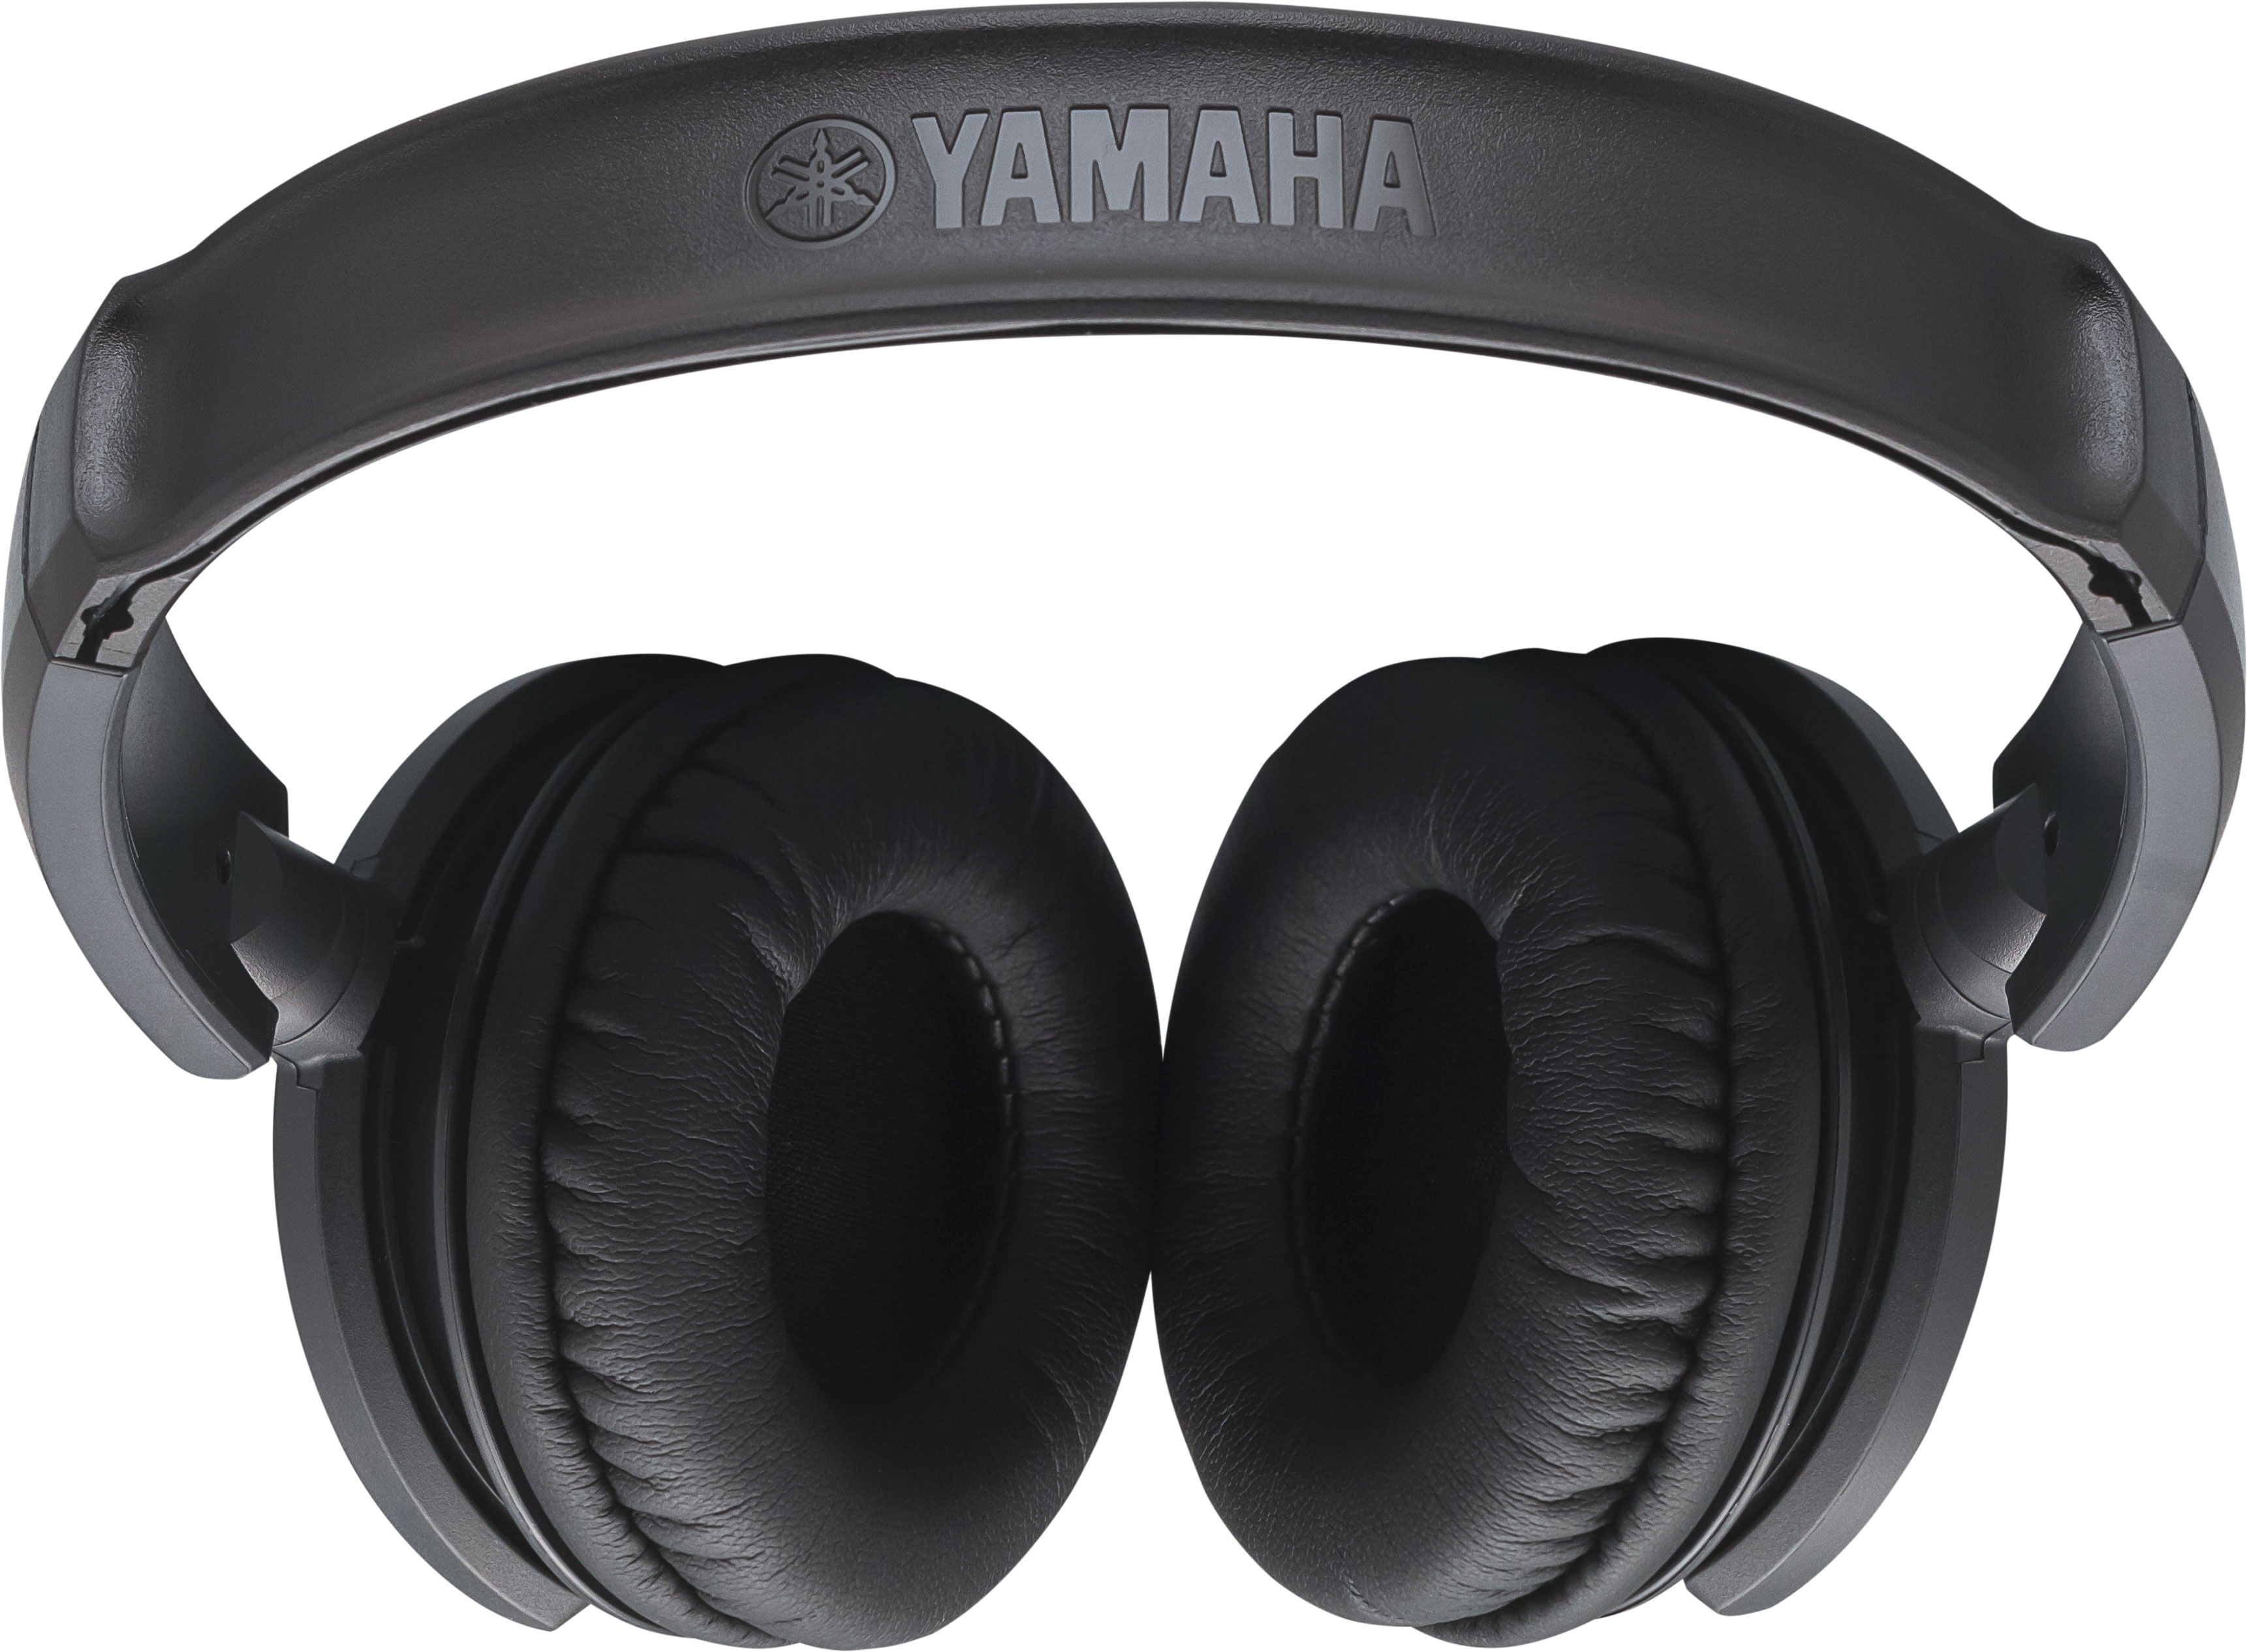 Yamaha Hph-100b - Closed headset - Variation 2